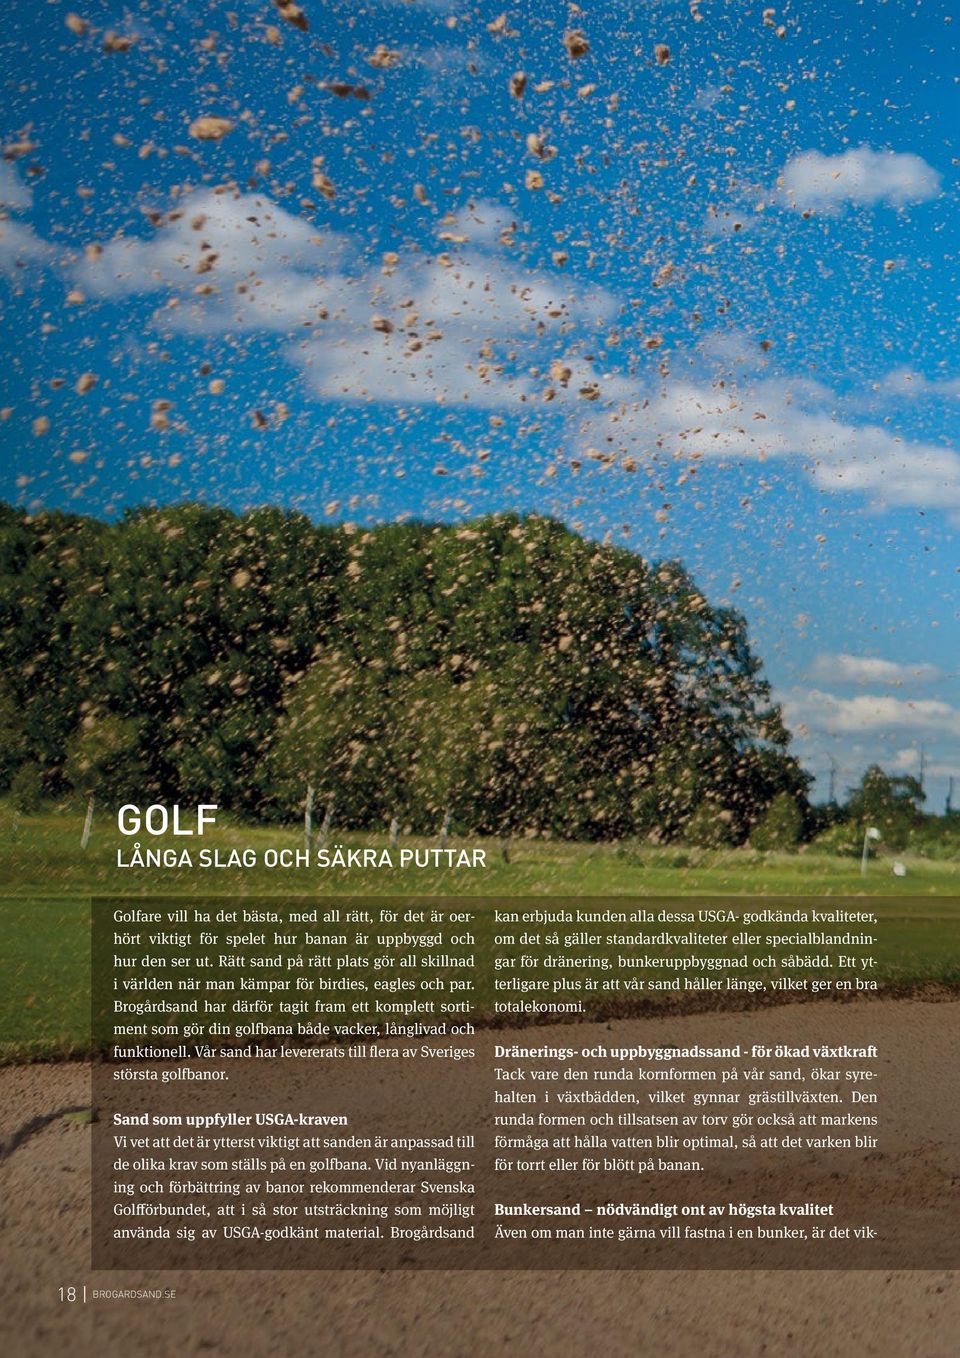 Brogårdsand har därför tagit fram ett komplett sortiment som gör din golfbana både vacker, långlivad och funktionell. Vår sand har levererats till flera av Sveriges största golfbanor.